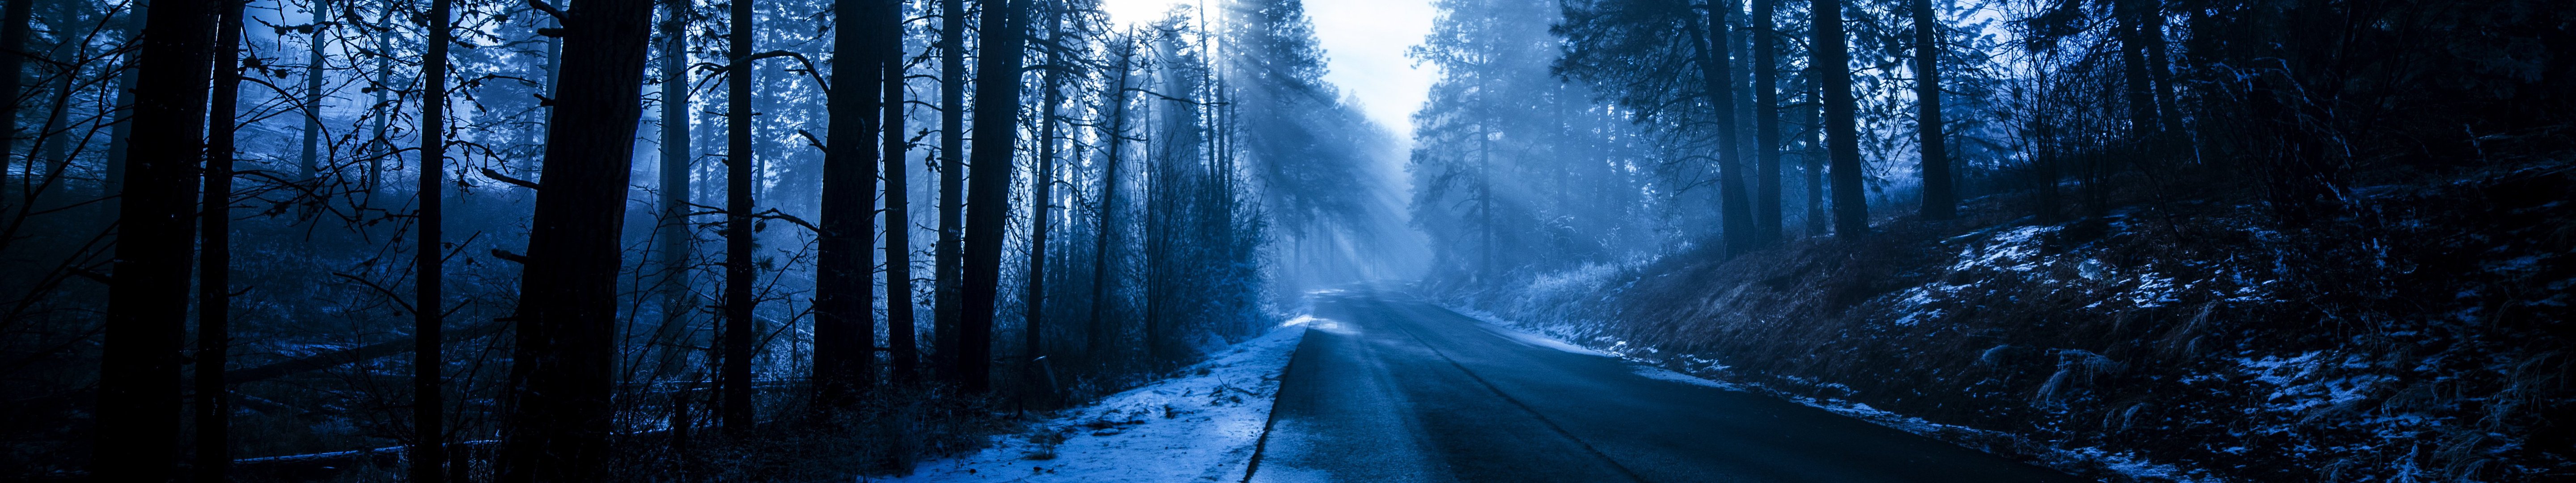 Đường băng mùa đông: Hình ảnh một con đường ven sông khiến bạn ngỡ như đang đứng trước mắt một tác phẩm nghệ thuật lung linh ánh sáng. Hãy xem ảnh để thưởng thức cảnh đẹp mùa đông tuyệt đẹp này.